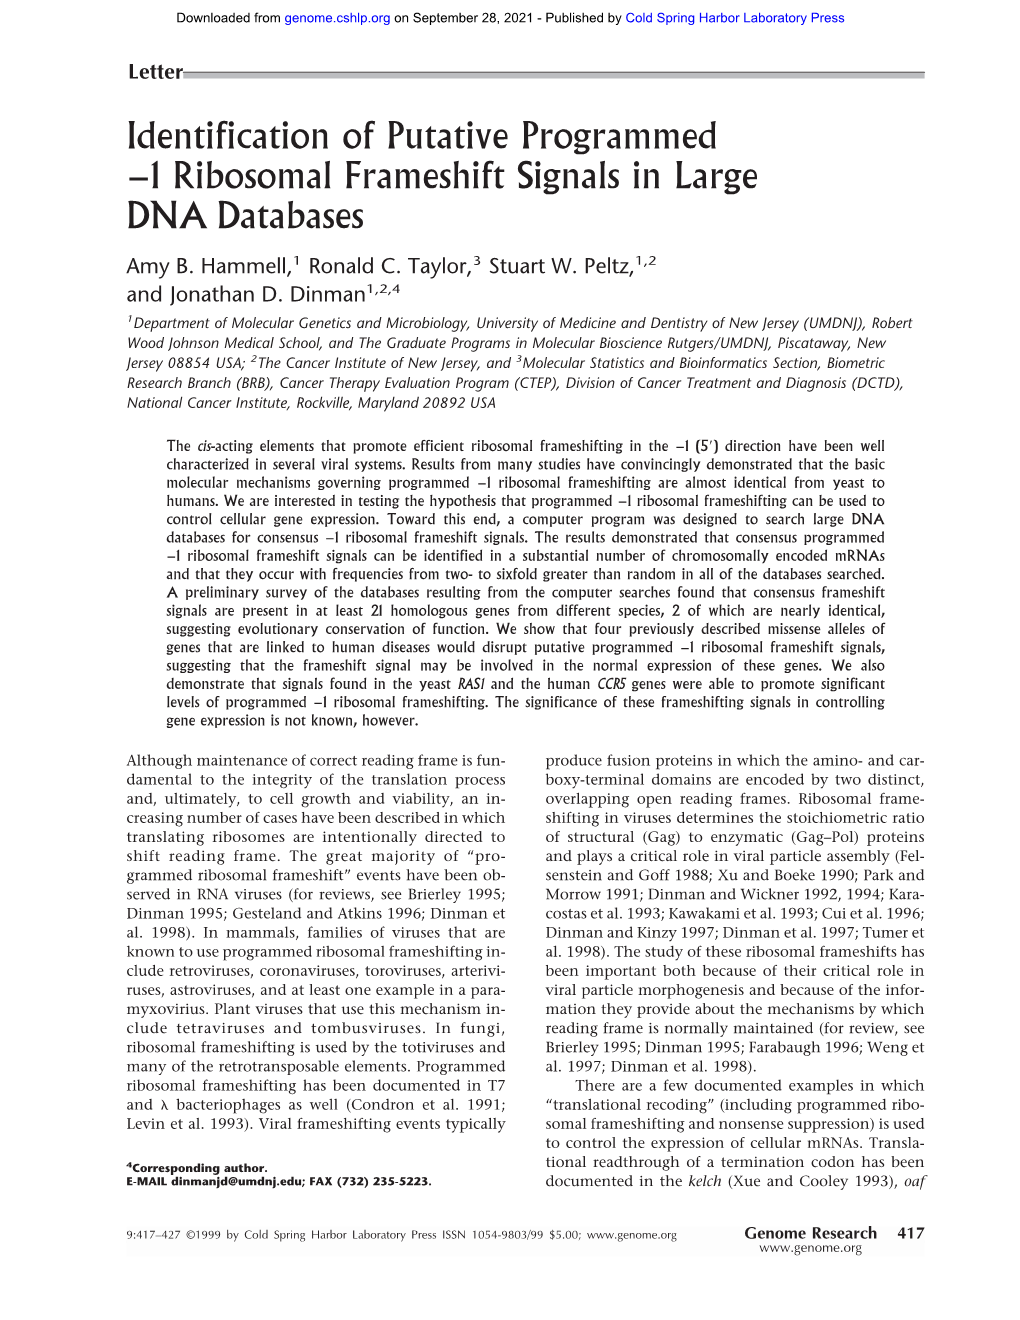 1 Ribosomal Frameshift Signals in Large DNA Databases